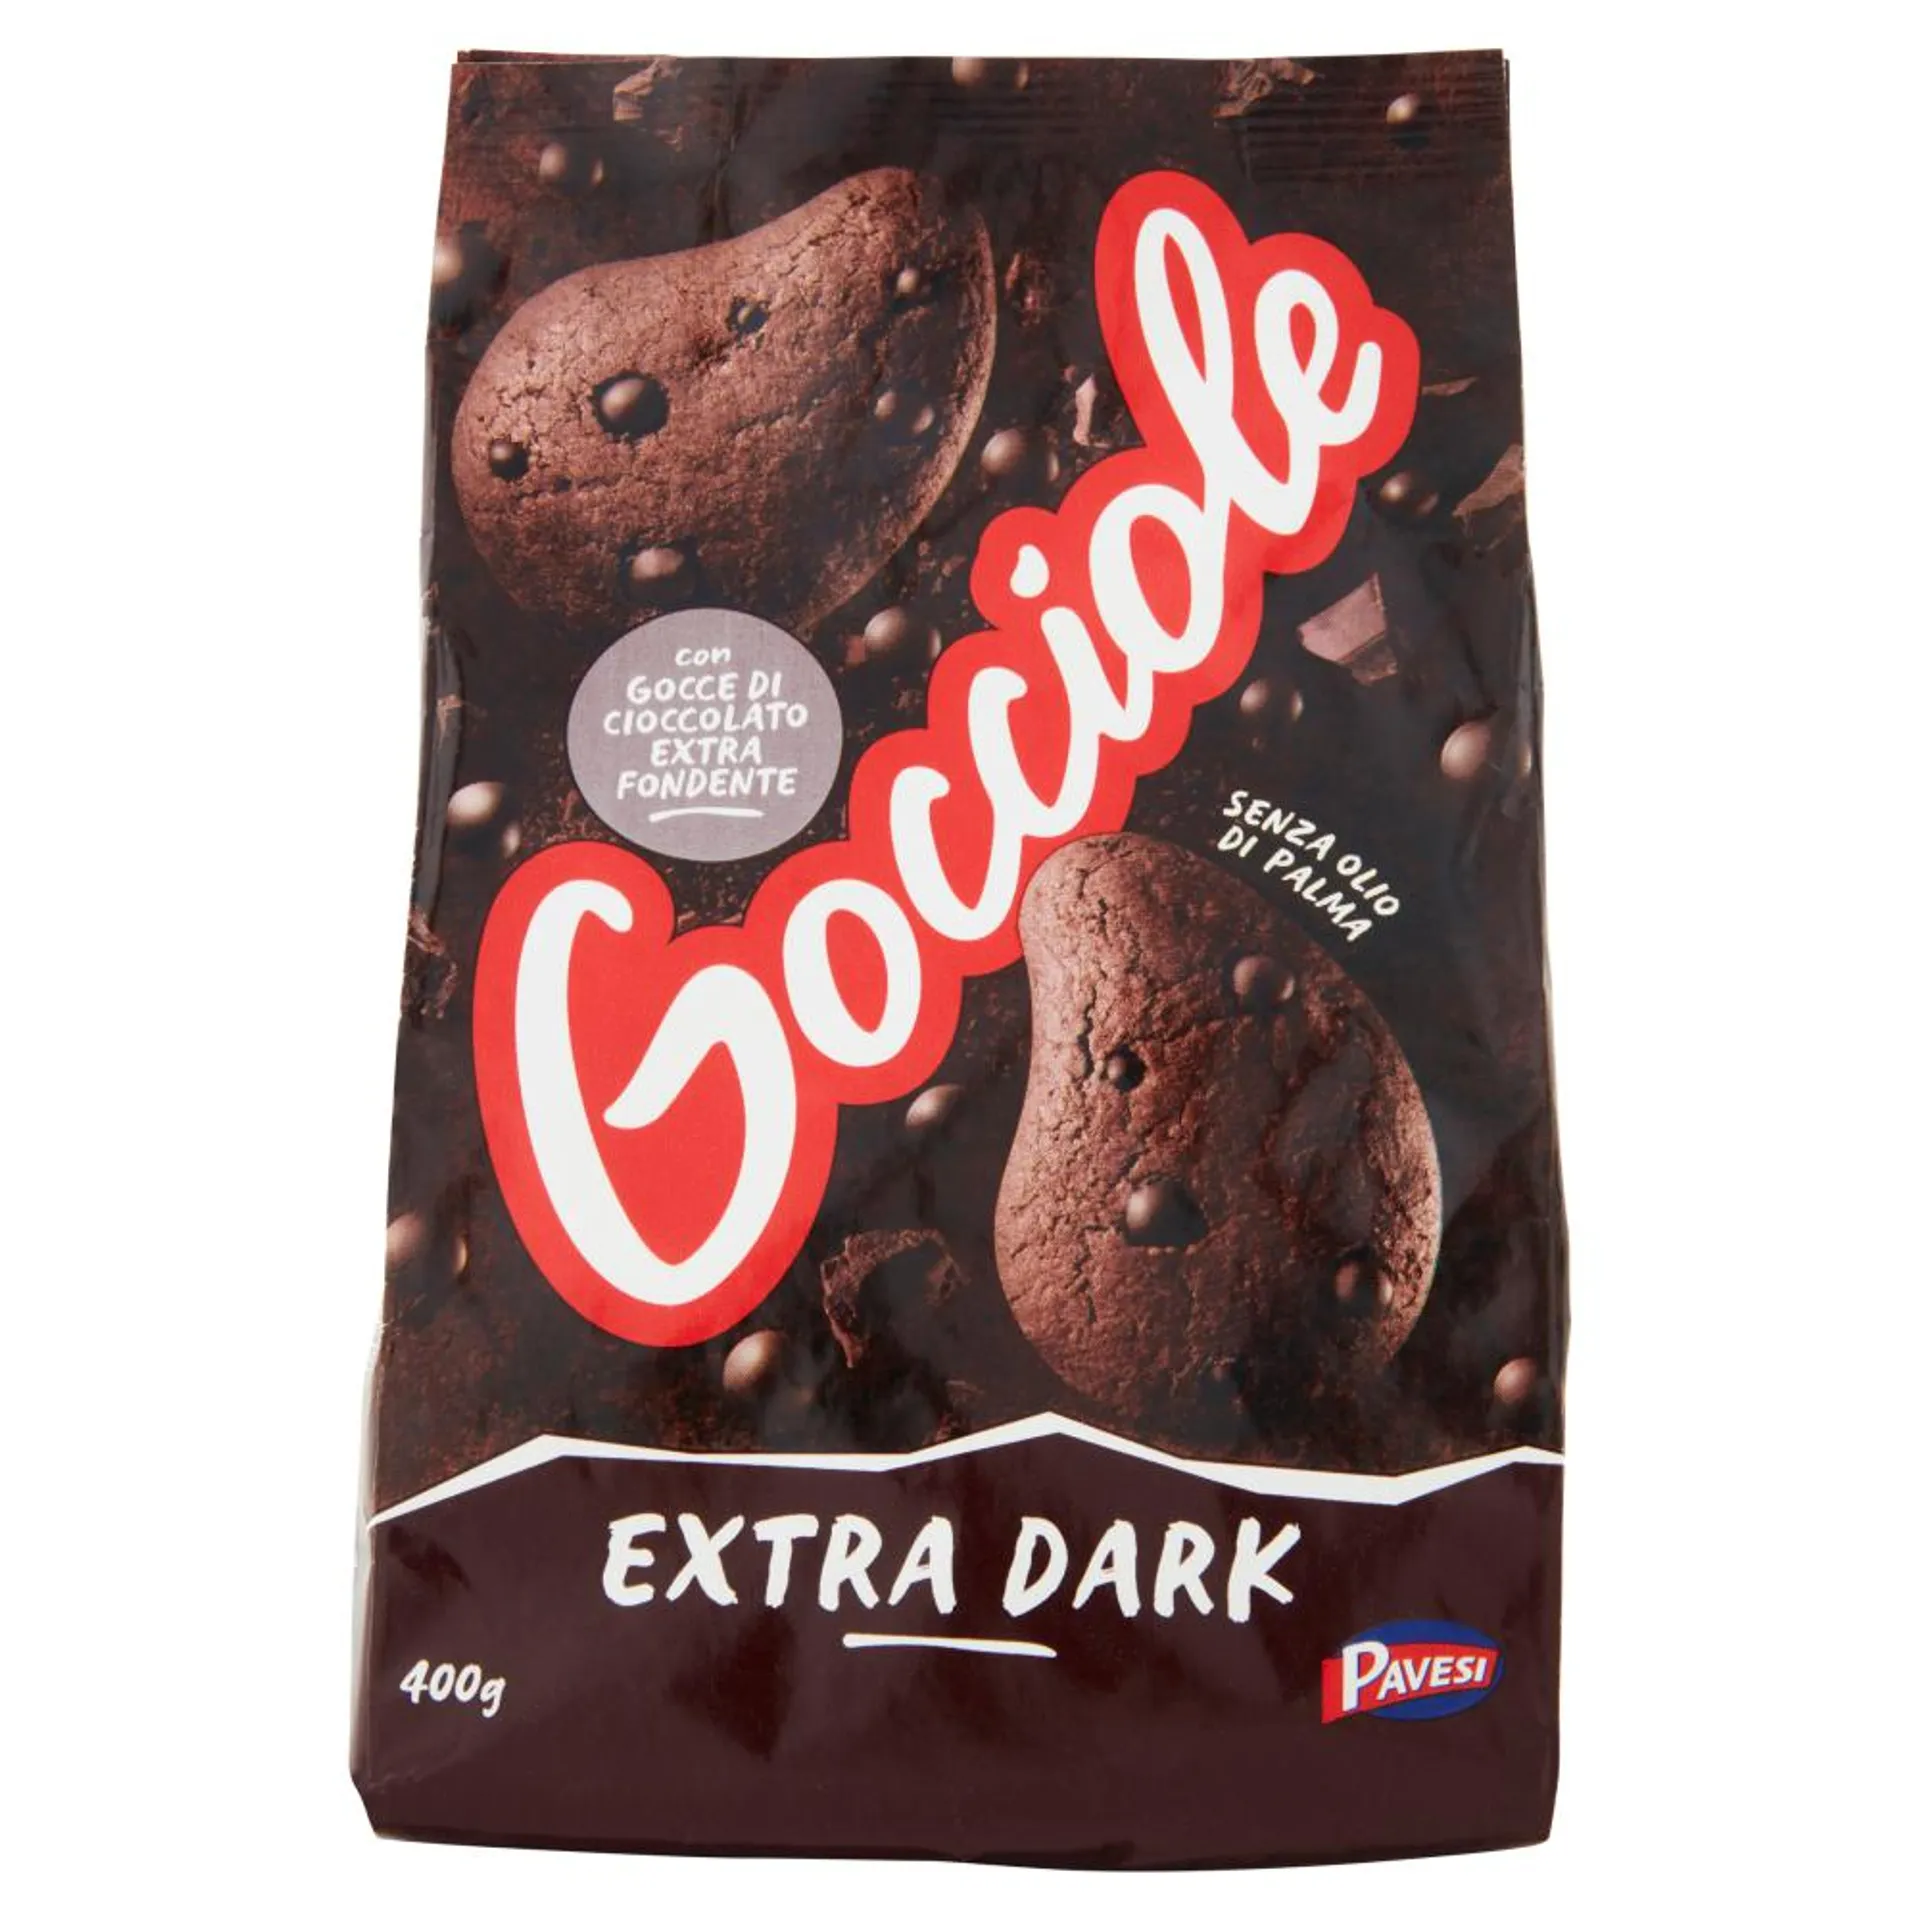 Pavesi Gocciole Extradark Biscotti con Gocce di Cioccolato Extra Fondente 400g